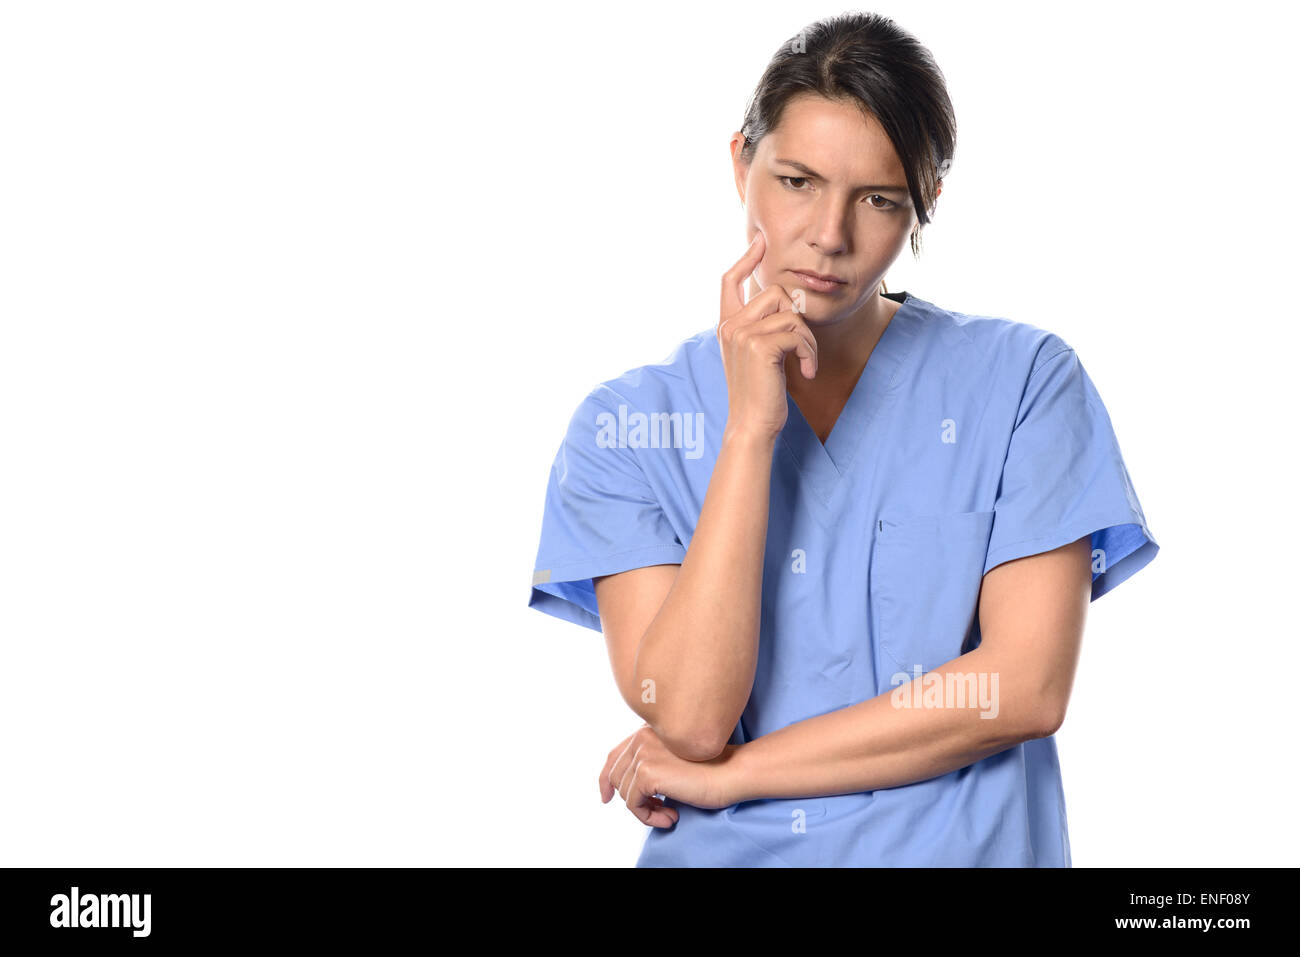 Desanimado joven médico o enfermero vestido de azul scrubs quirúrgica en el piso morosely mira fijamente con una expresión pensativa, es Foto de stock